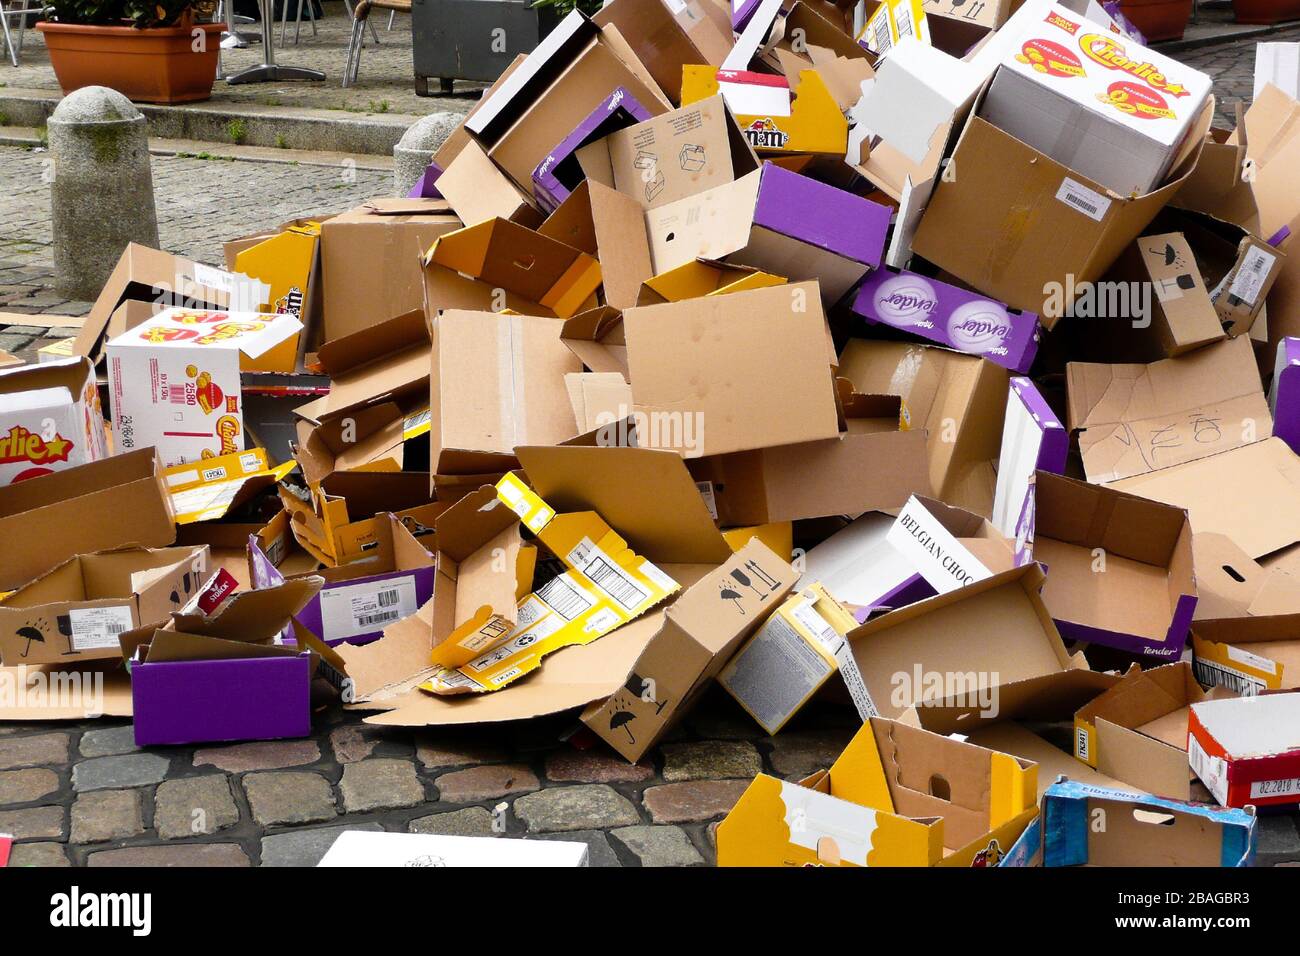 Verpackungsmuell, Hamburger Fischmarkt, Kartons, Holz, Boxen, Papier, Muell, Muellentsprgung, Recycling, Umweltverschmutzung, Stock Photo